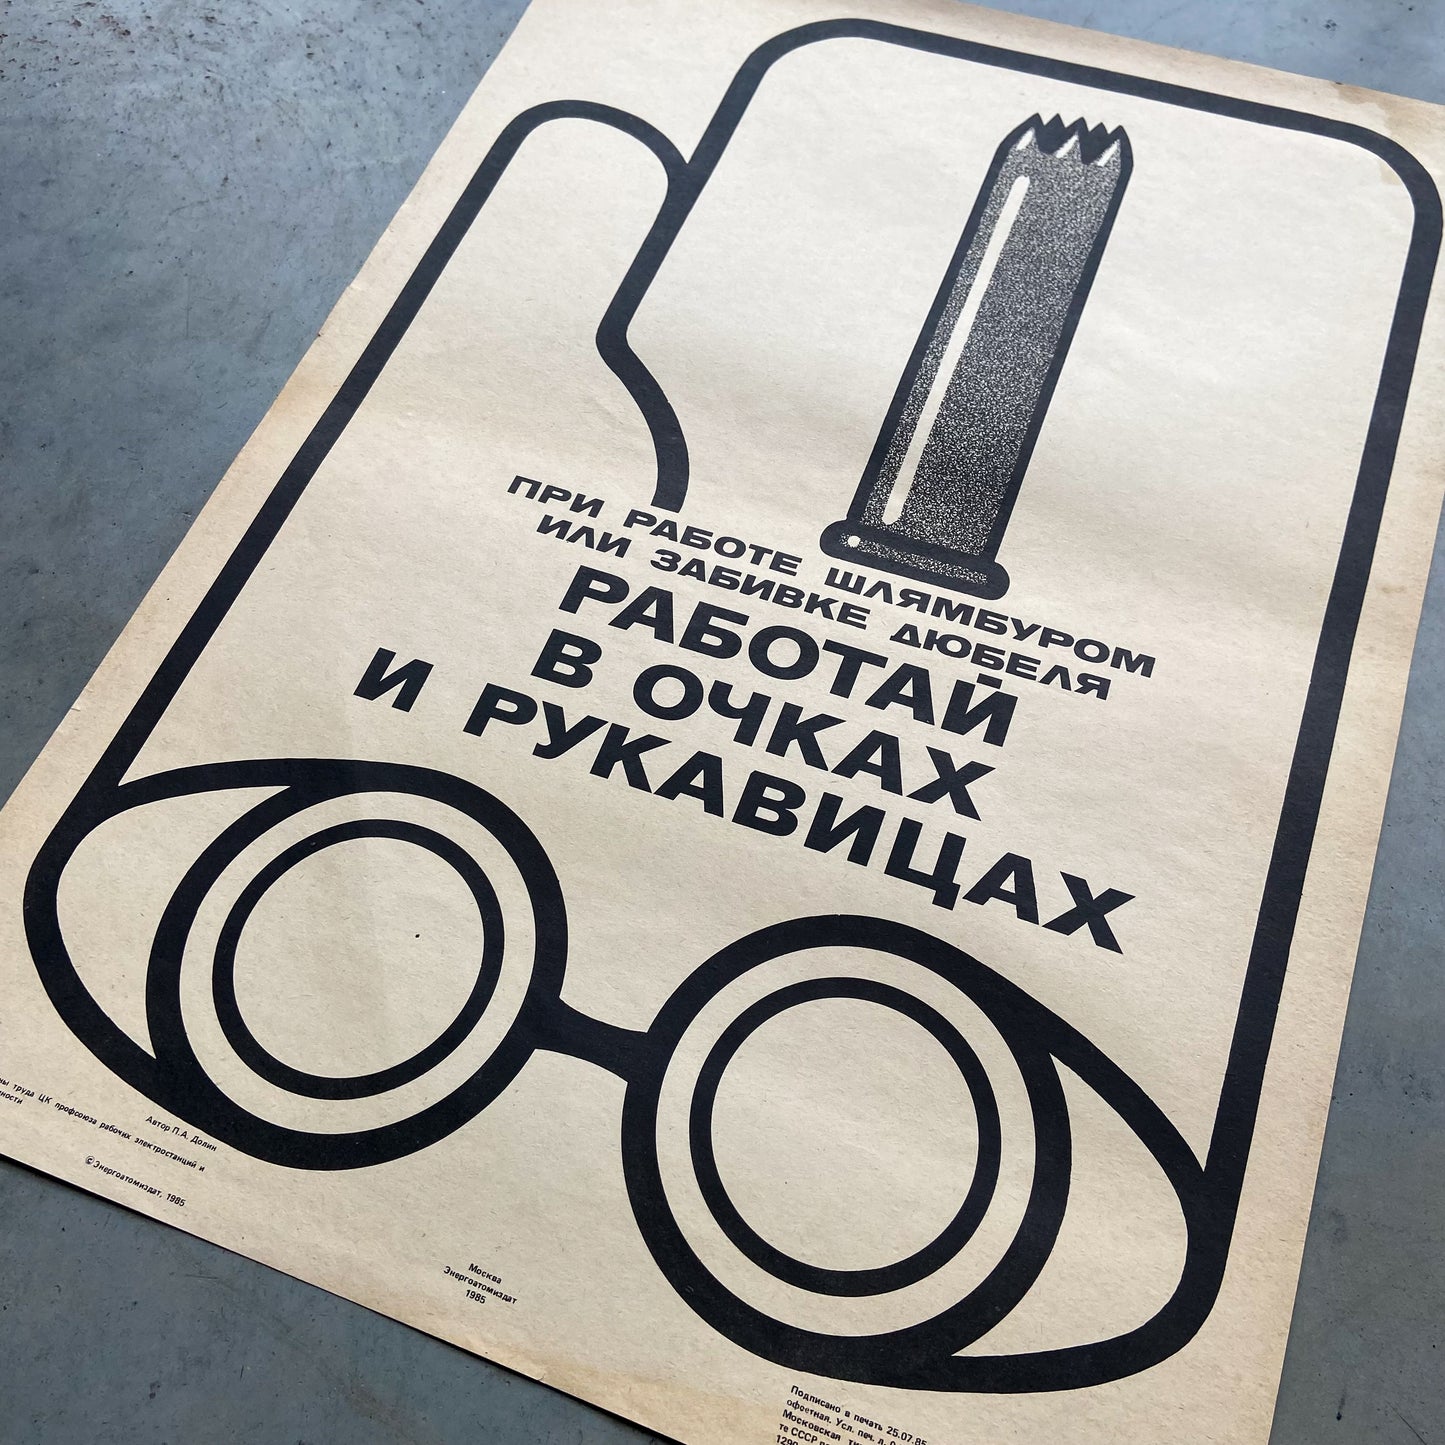 1985 Soviet Work Safety Poster #P1183 - 17" x 23"